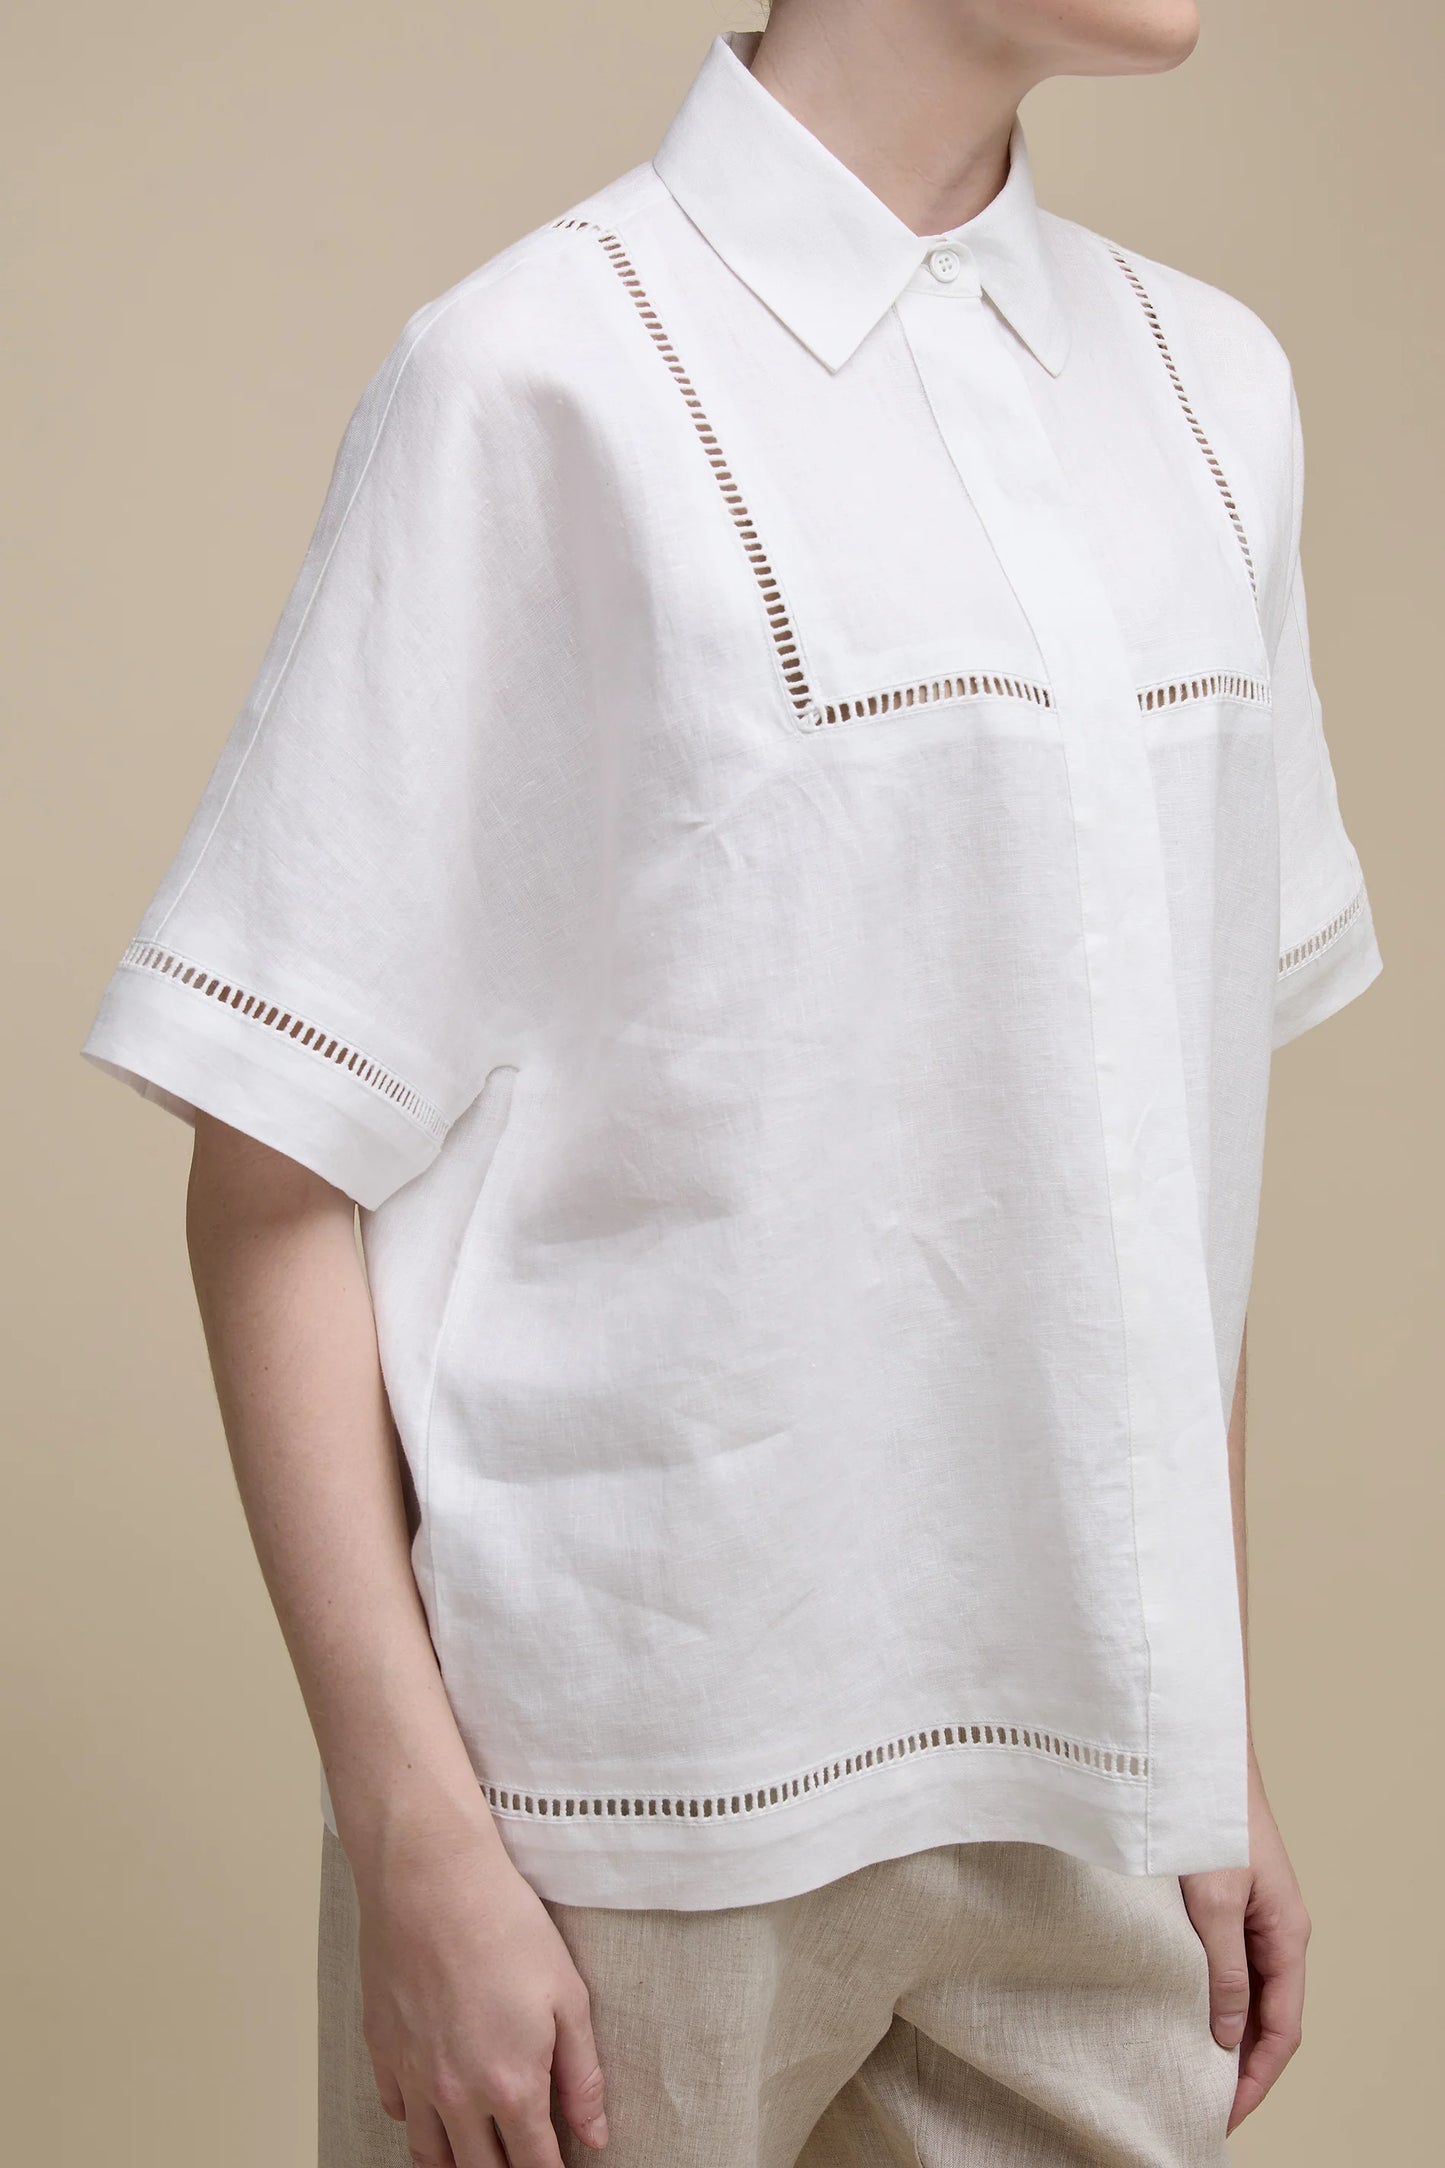 Uchuu White Linen Shirt / Open Stitch Embroidery